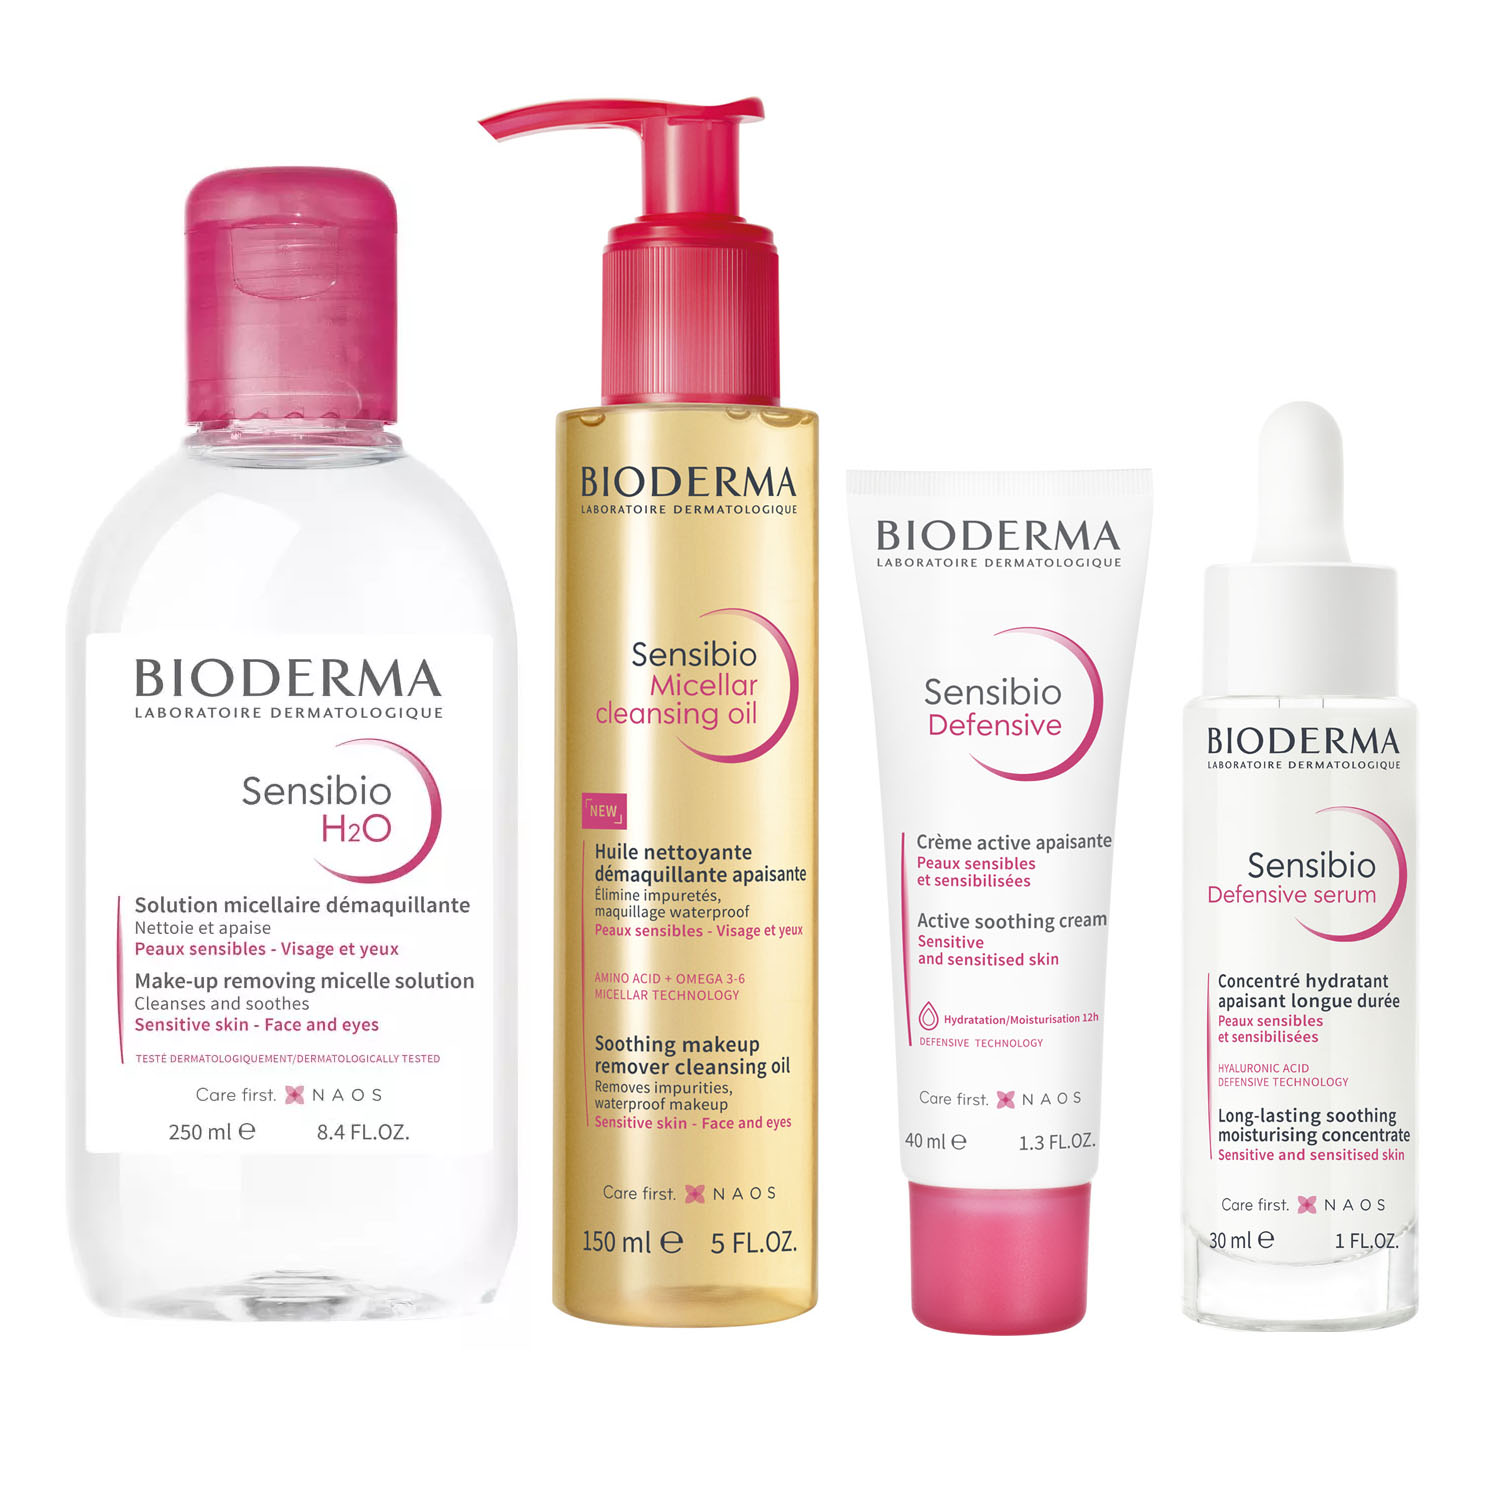 Bioderma Набор средств для чувствительной кожи: крем 40 мл + сыворотка 30 мл + масло 150 мл + мицеллярная вода 250 мл (Bioderma, Sensibio)